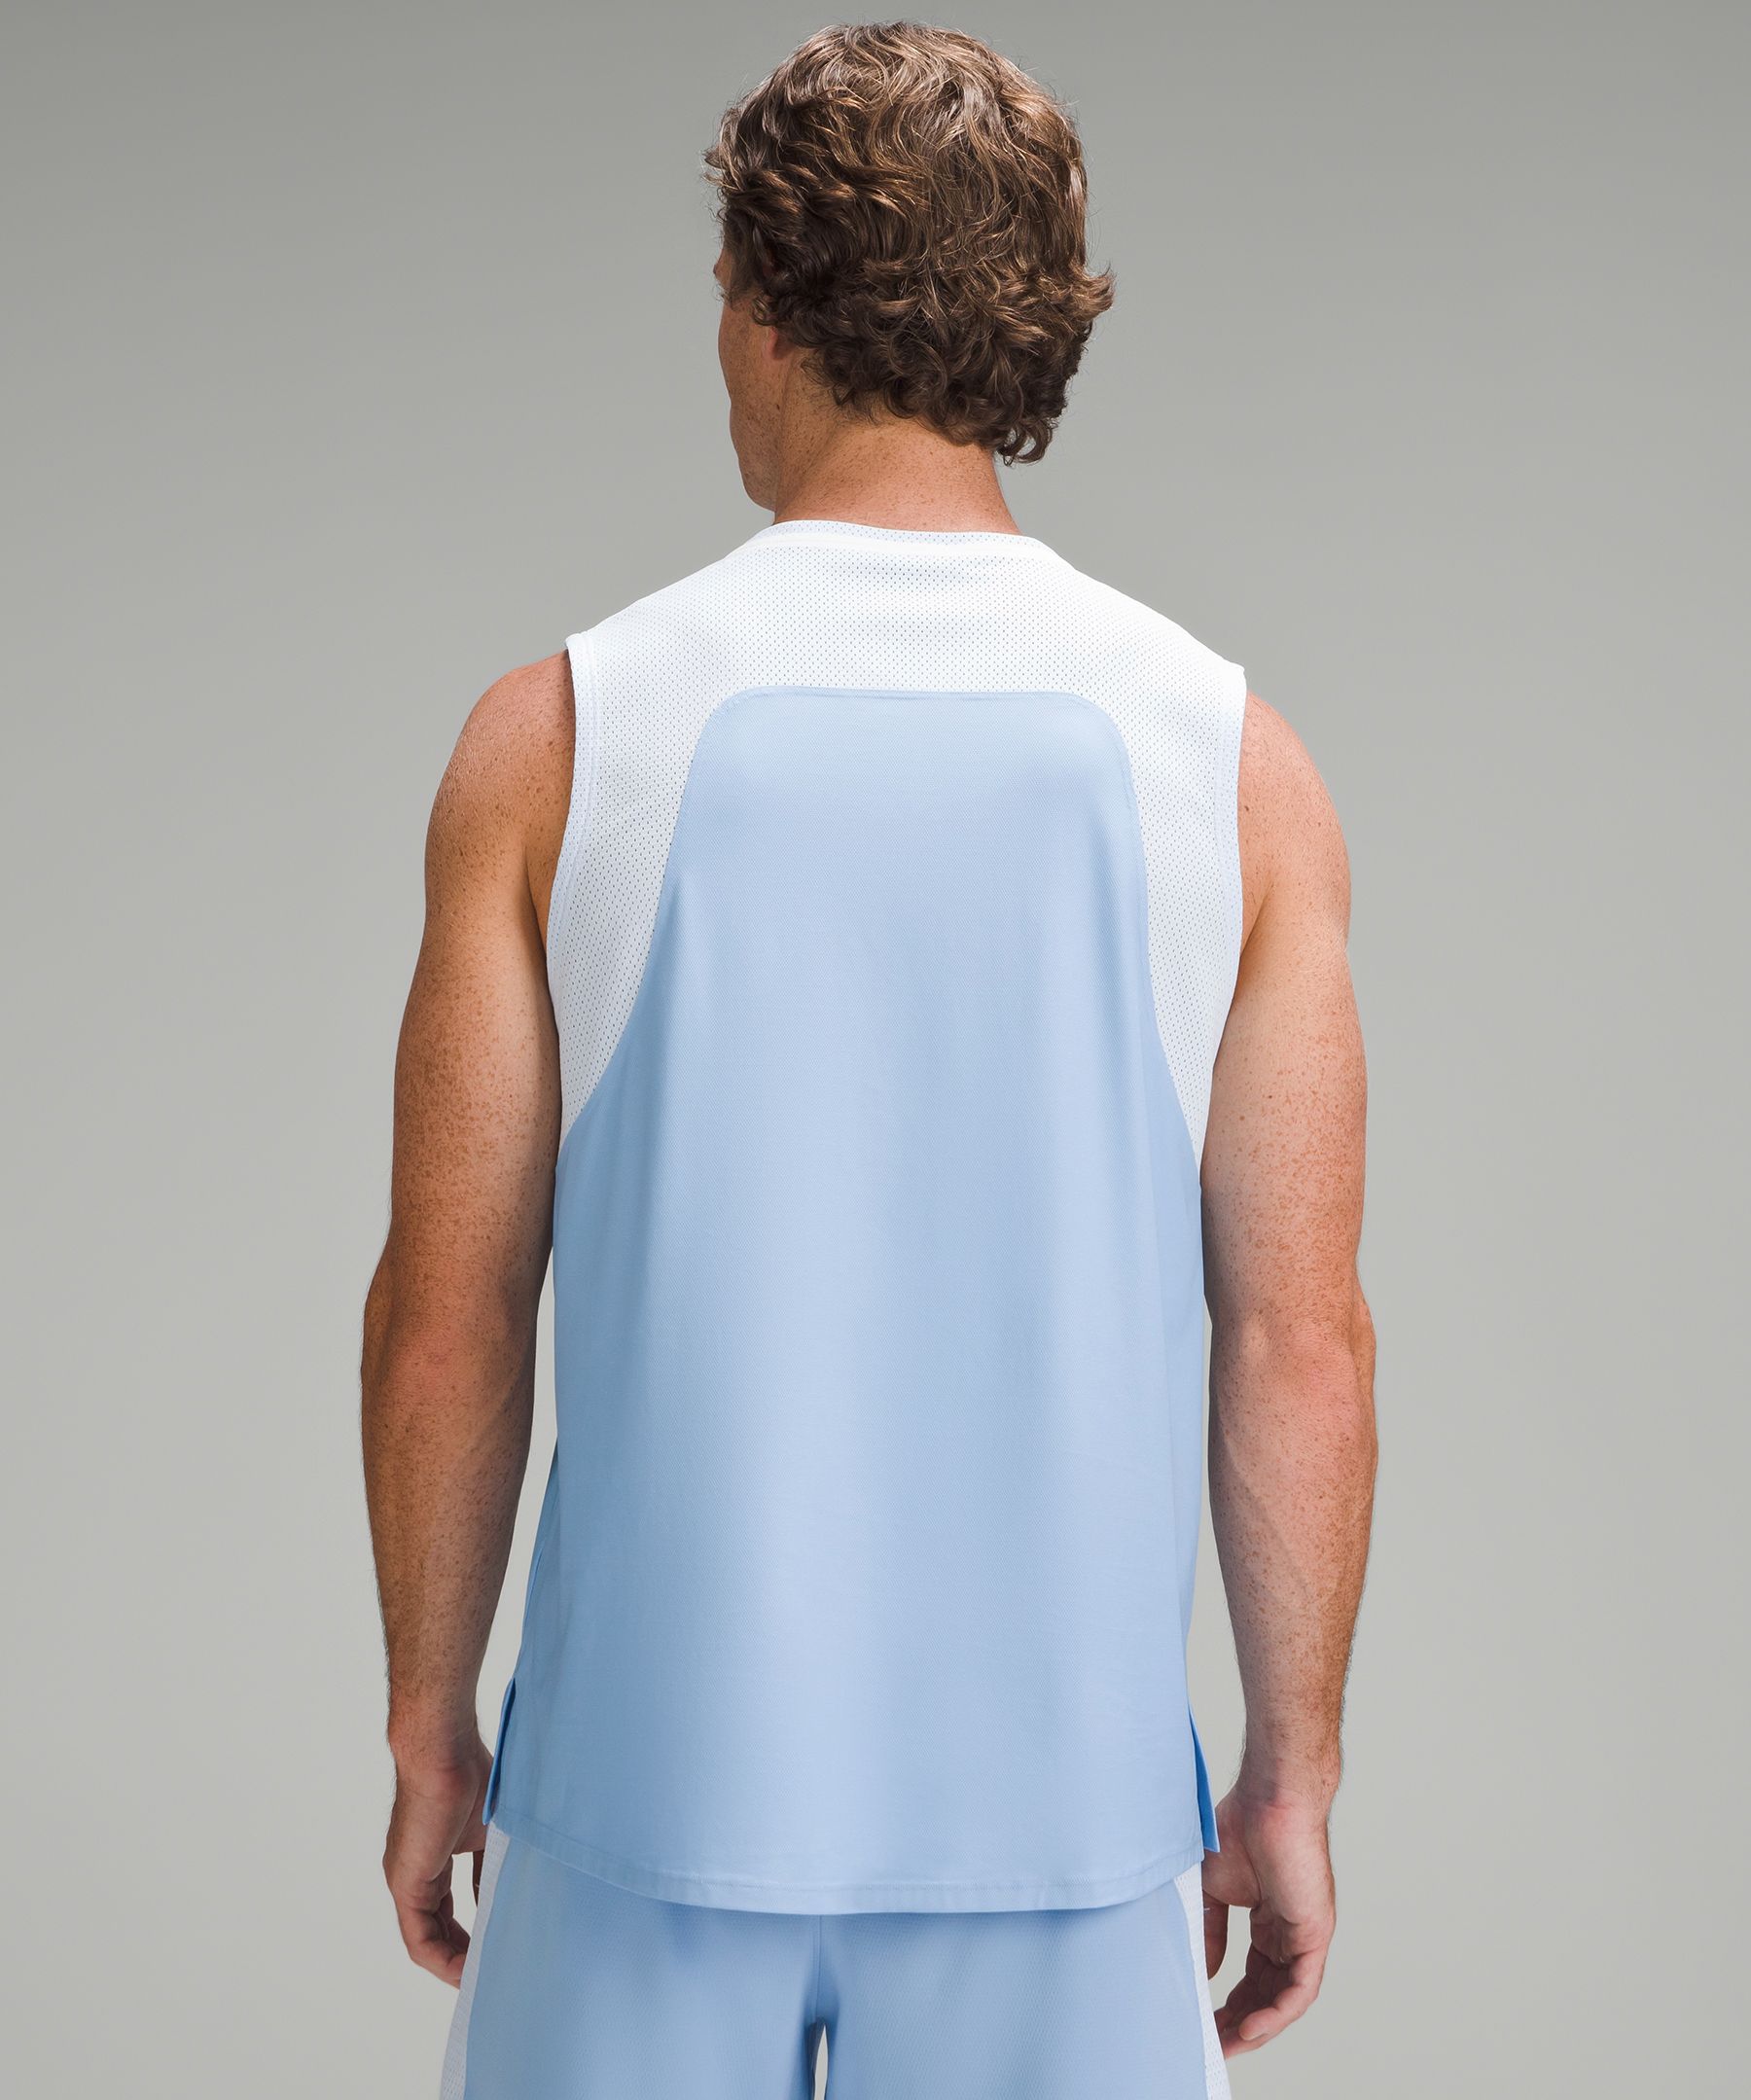 Tennis Sleeveless Shirt | Men's & Tank Tops